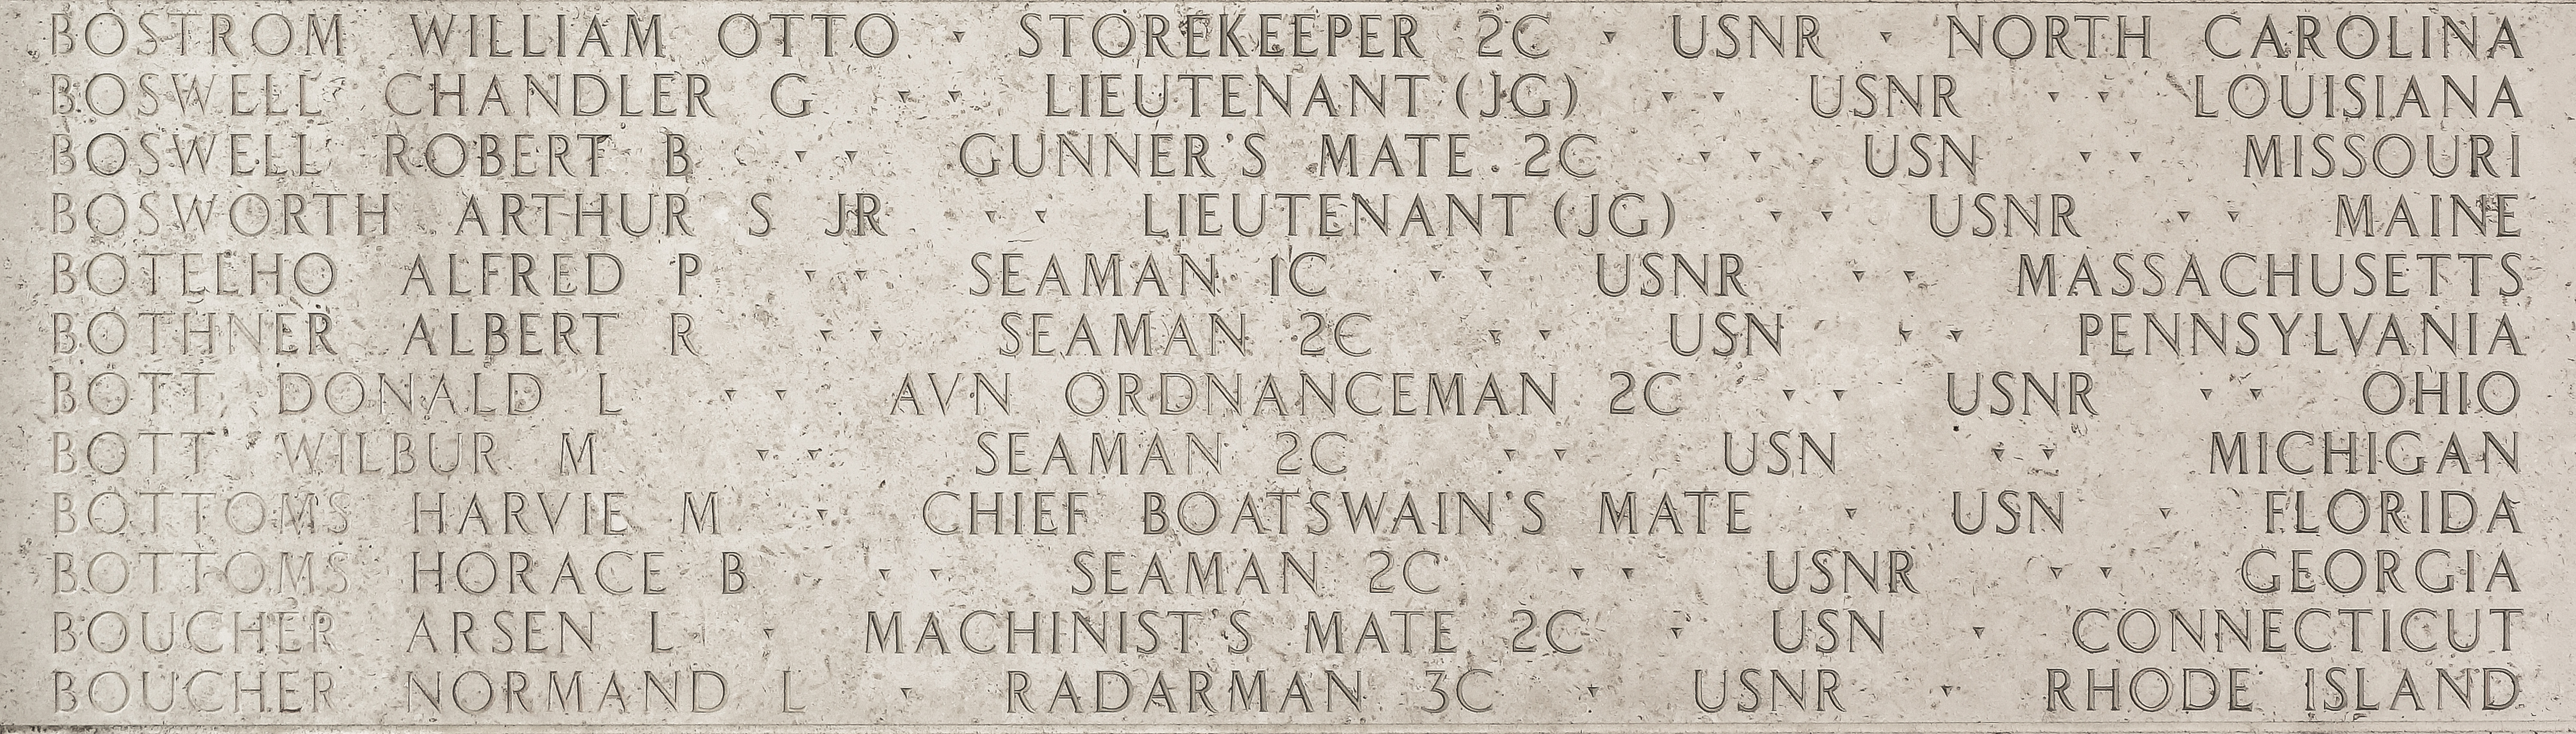 Normand L. Boucher, Radarman Third Class